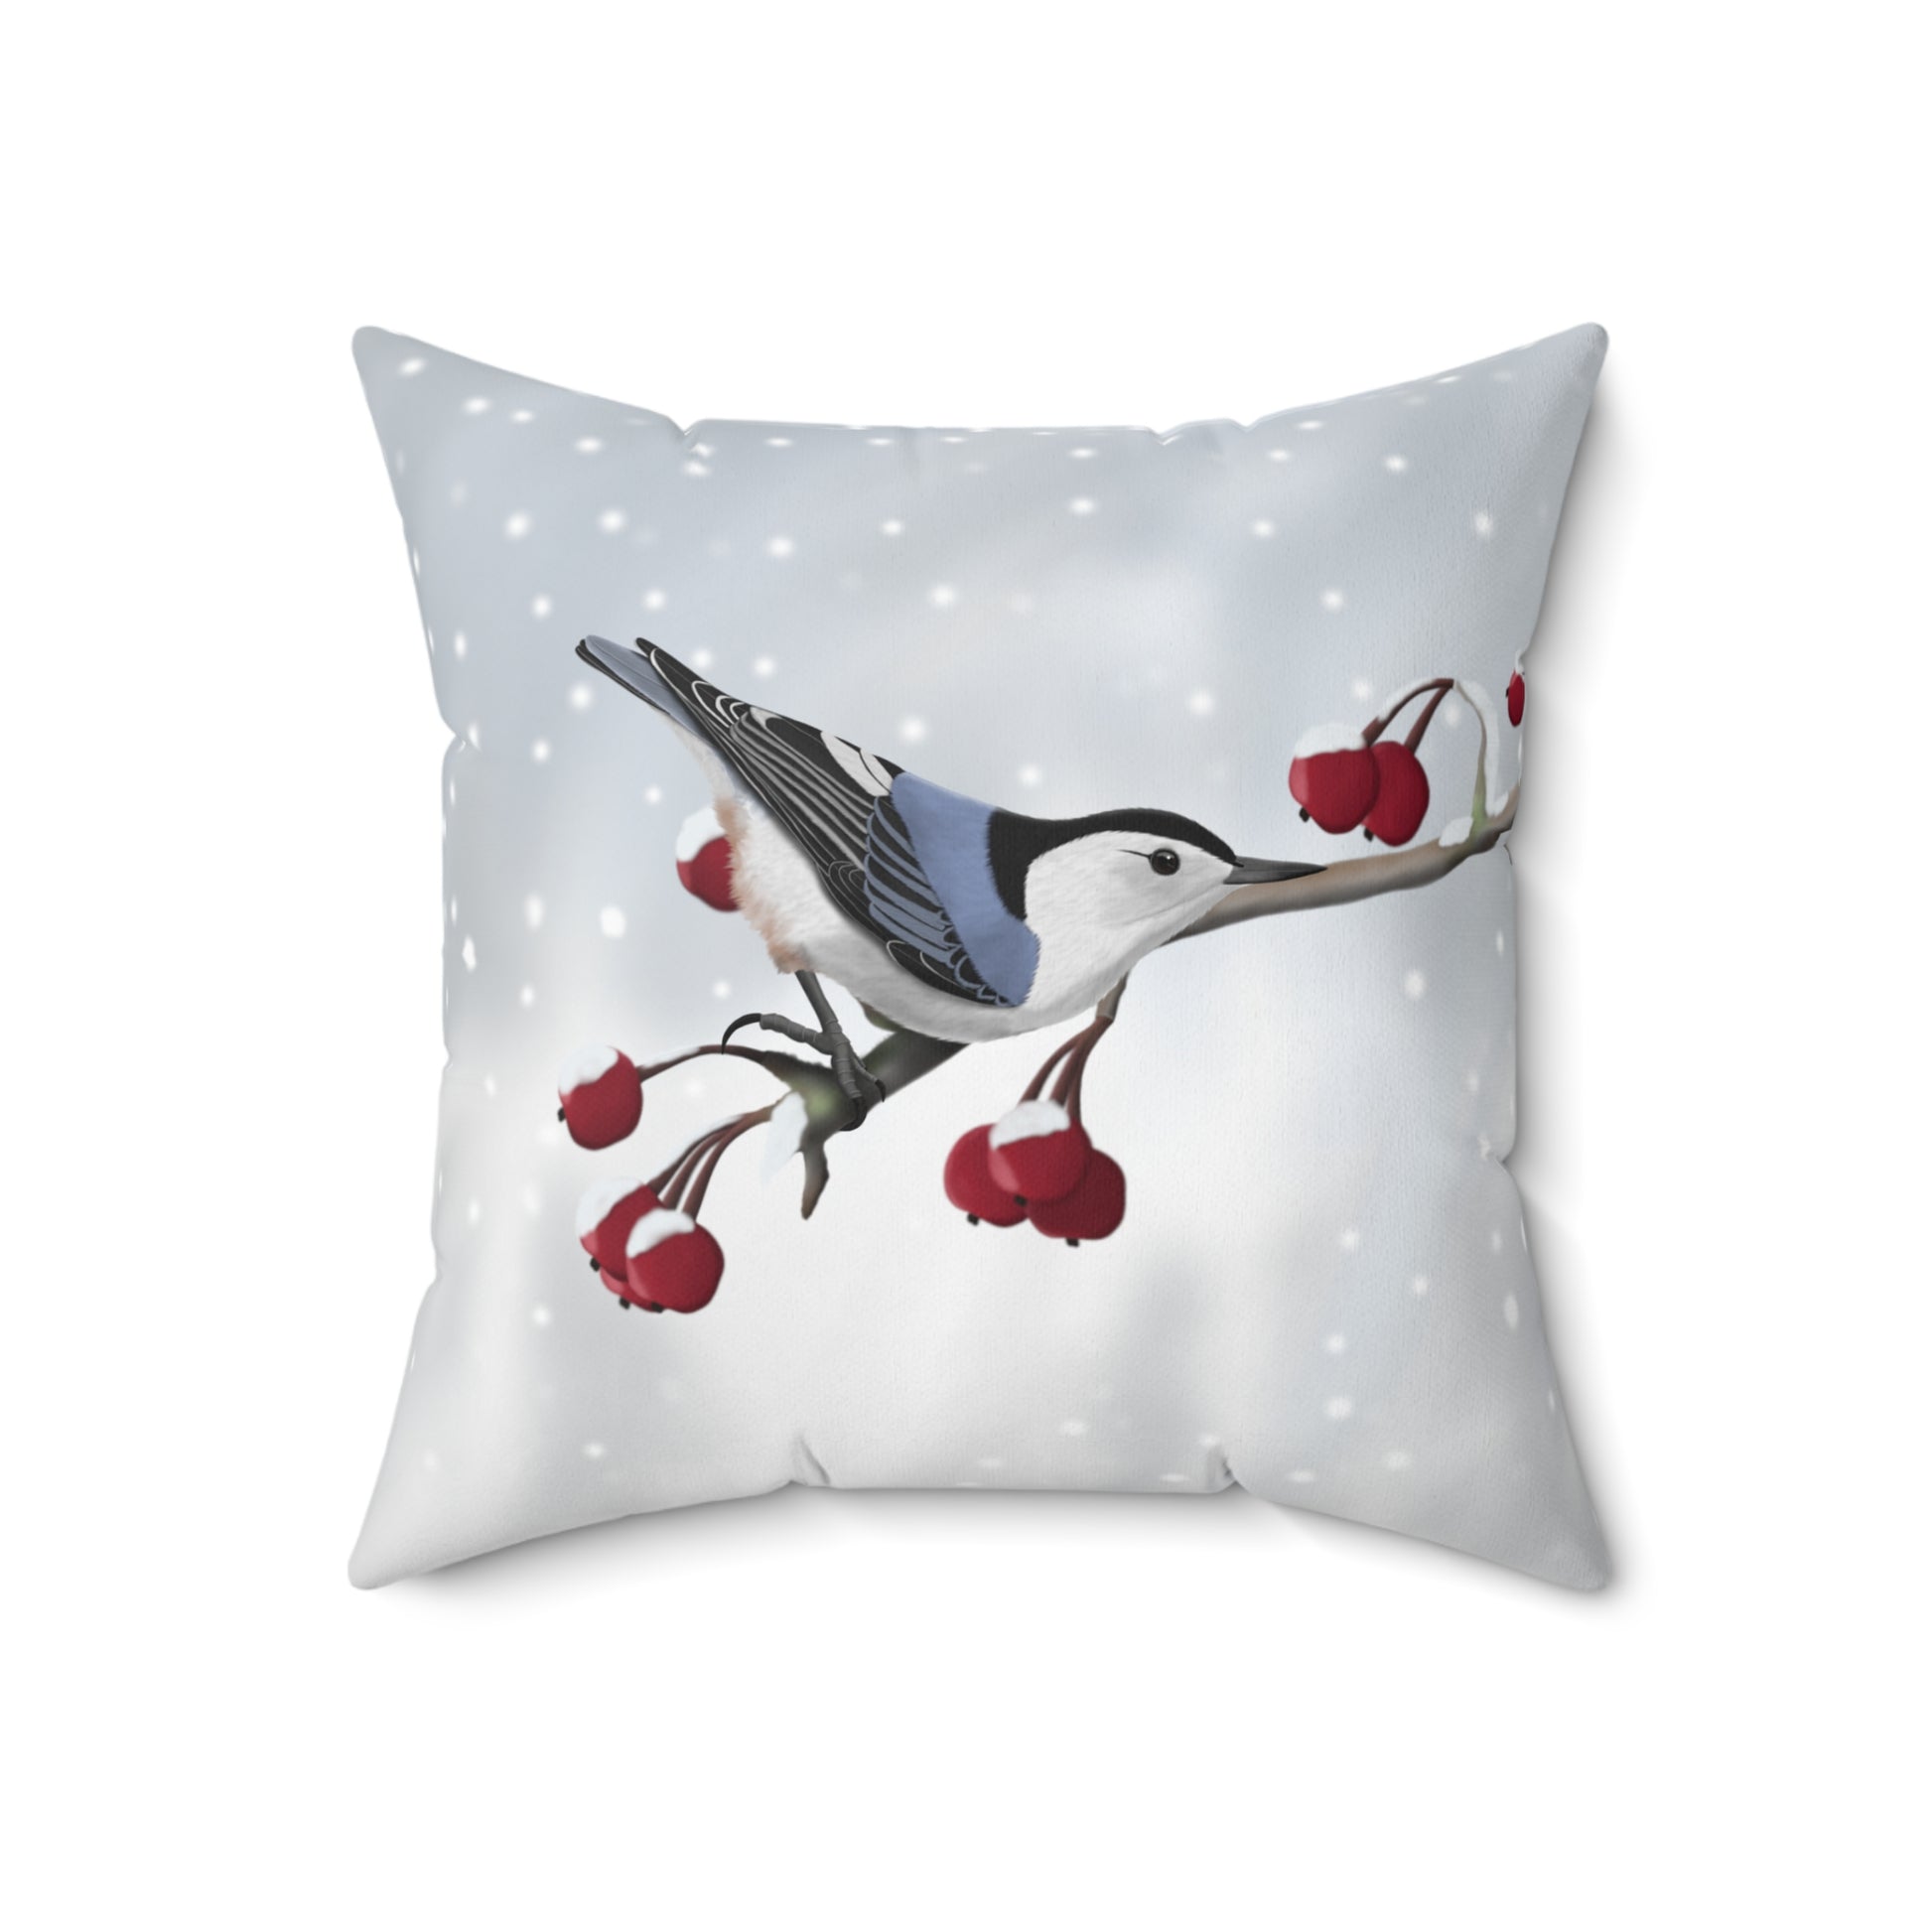 Nuthatch on a Winter Branch Bird Throw Pillow 18"x18"